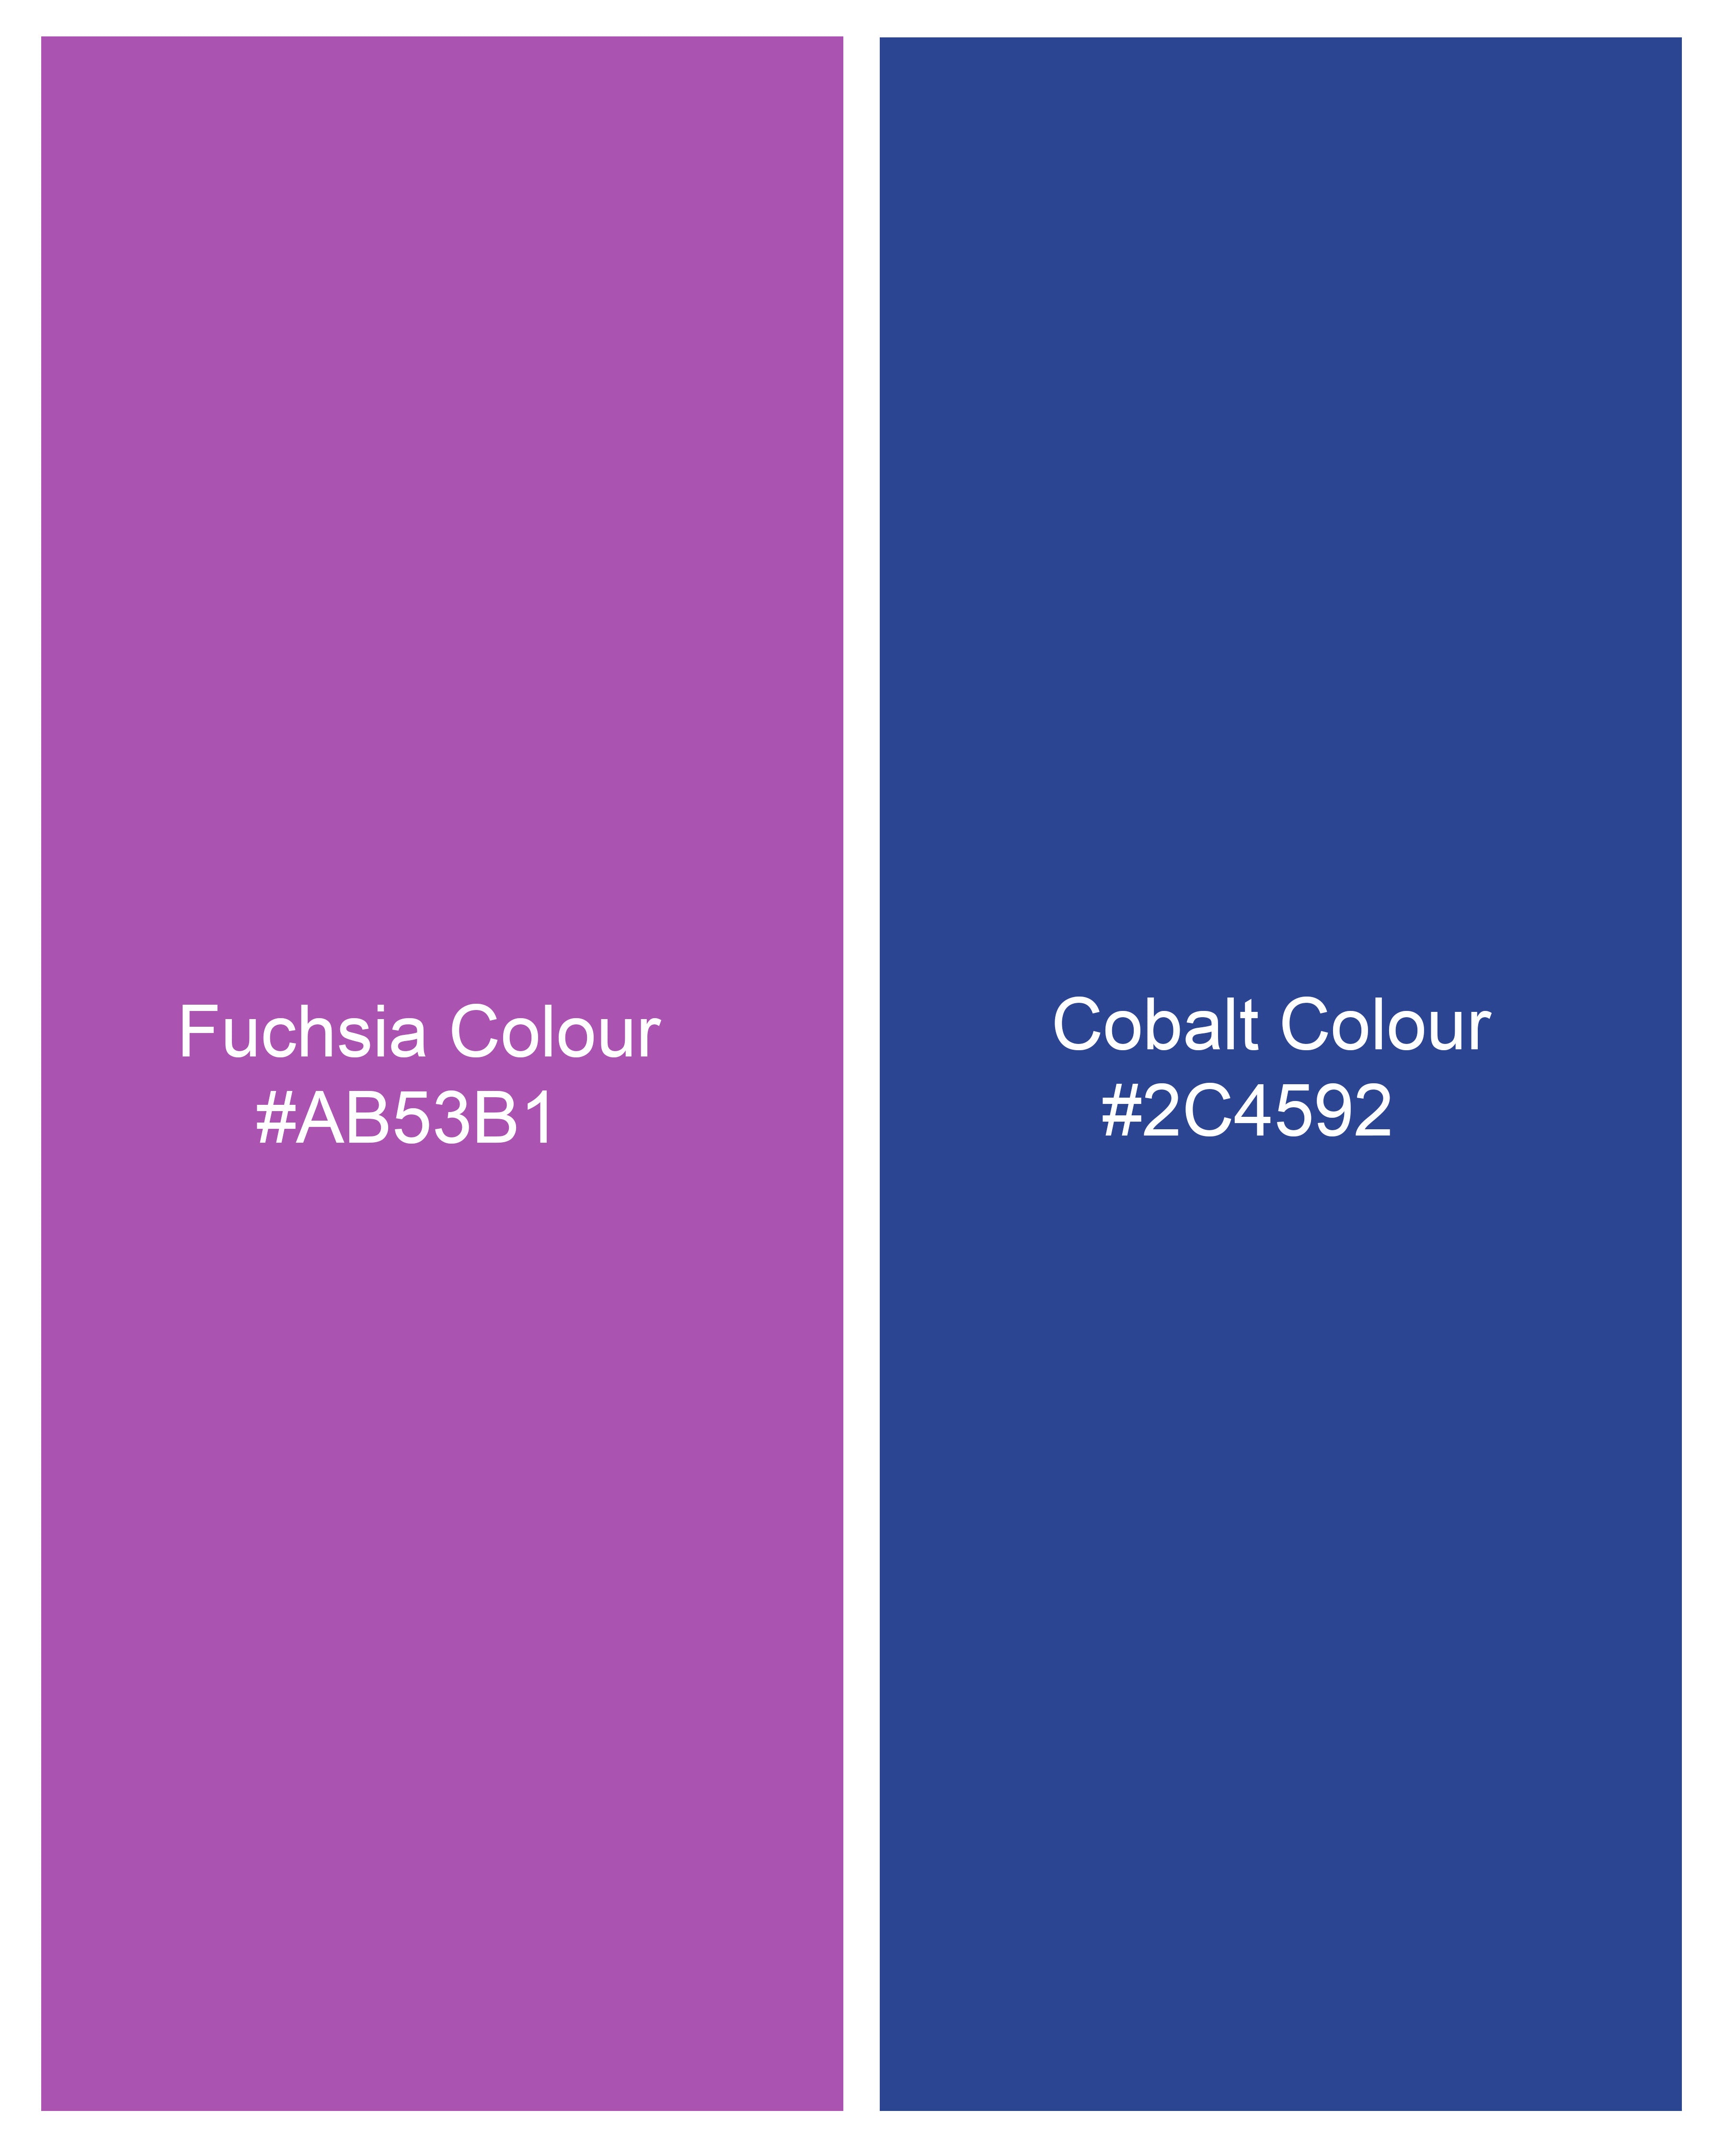 Fuchsia Violet with Cobalt Blue Hand Embroidered Dobby Premium Giza Cotton Shirt 6130-CA-E061-38, 6130-CA-E061-H-38, 6130-CA-E061-39, 6130-CA-E061-H-39, 6130-CA-E061-40, 6130-CA-E061-H-40, 6130-CA-E061-42, 6130-CA-E061-H-42, 6130-CA-E061-44, 6130-CA-E061-H-44, 6130-CA-E061-46, 6130-CA-E061-H-46, 6130-CA-E061-48, 6130-CA-E061-H-48, 6130-CA-E061-50, 6130-CA-E061-H-50, 6130-CA-E061-52, 6130-CA-E061-H-52